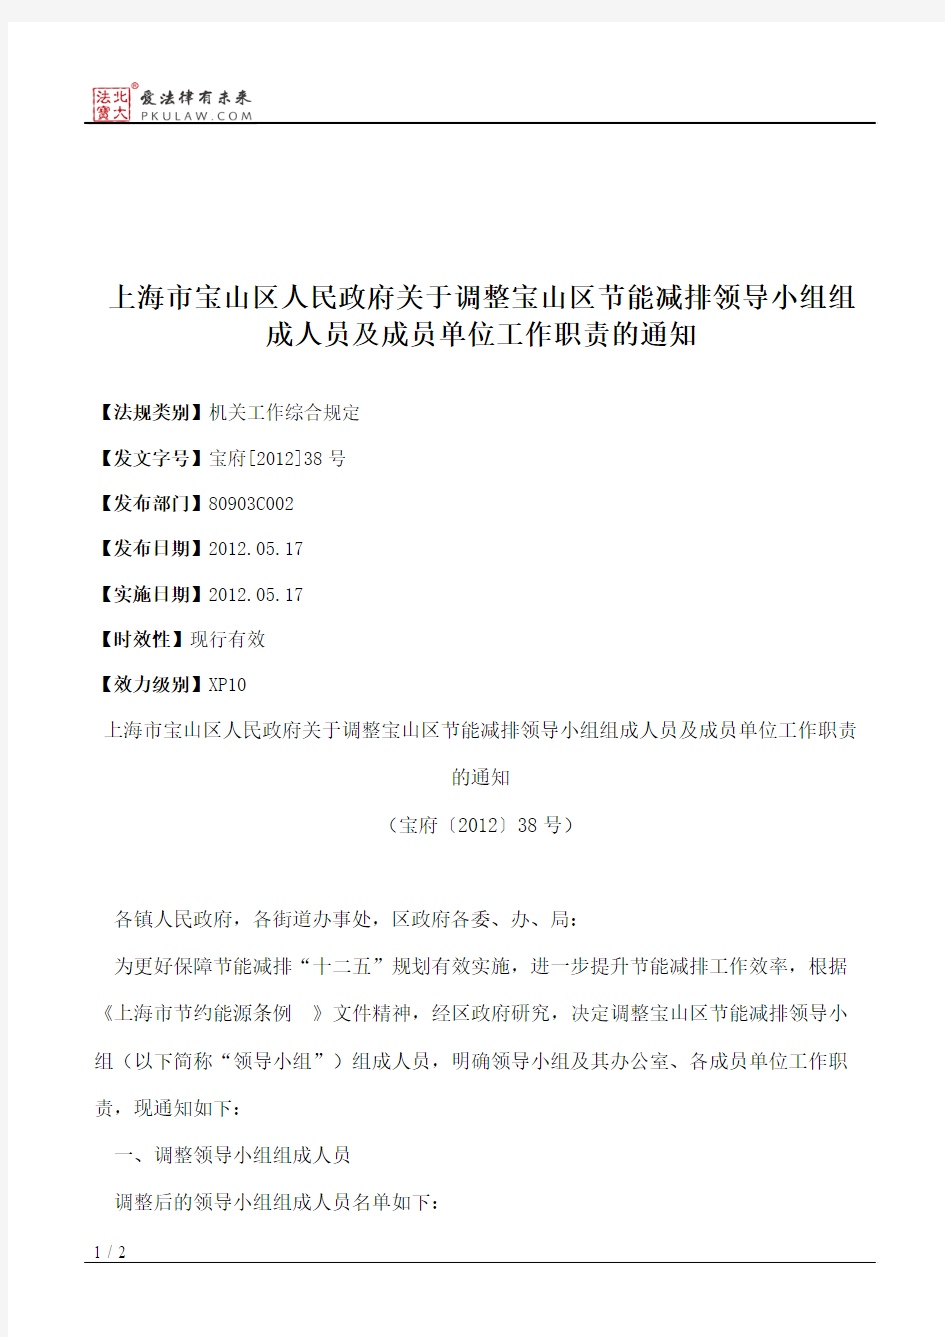 上海市宝山区人民政府关于调整宝山区节能减排领导小组组成人员及